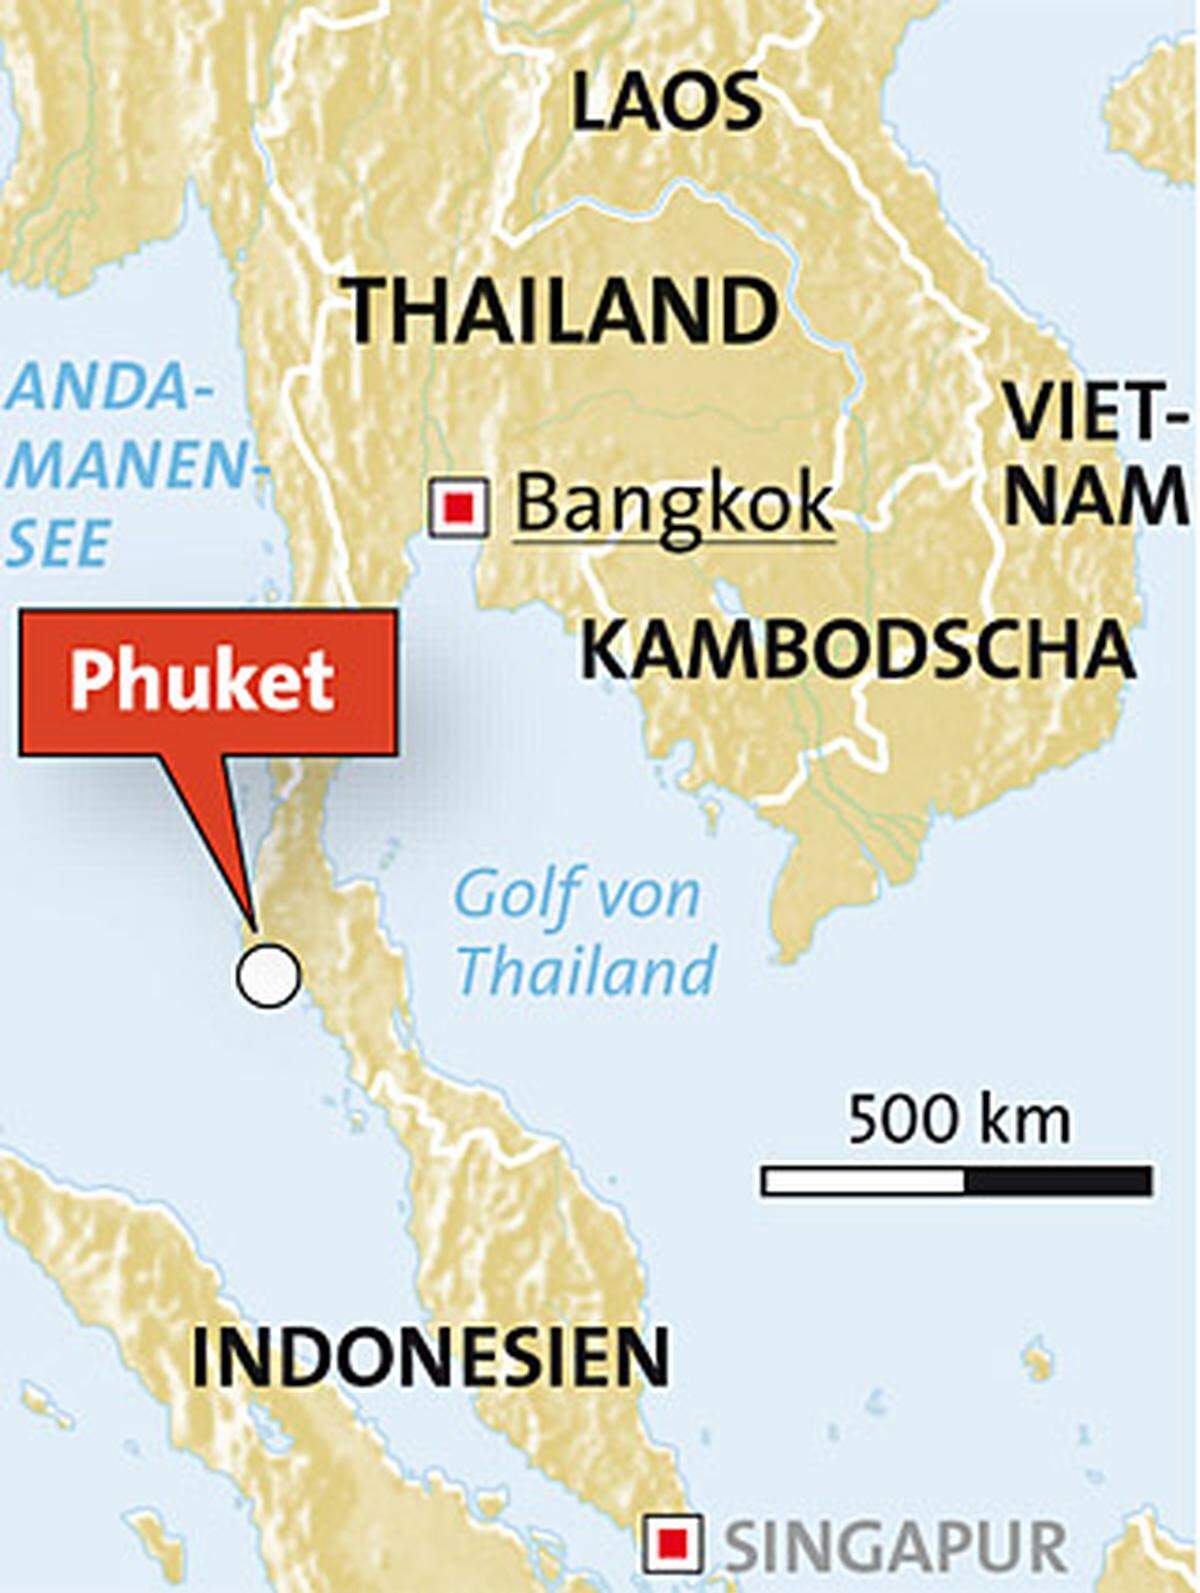 Das Schiff war auf der Retourfahrt von einem Tauchausflug von den Similan-Inseln nach Phuket.